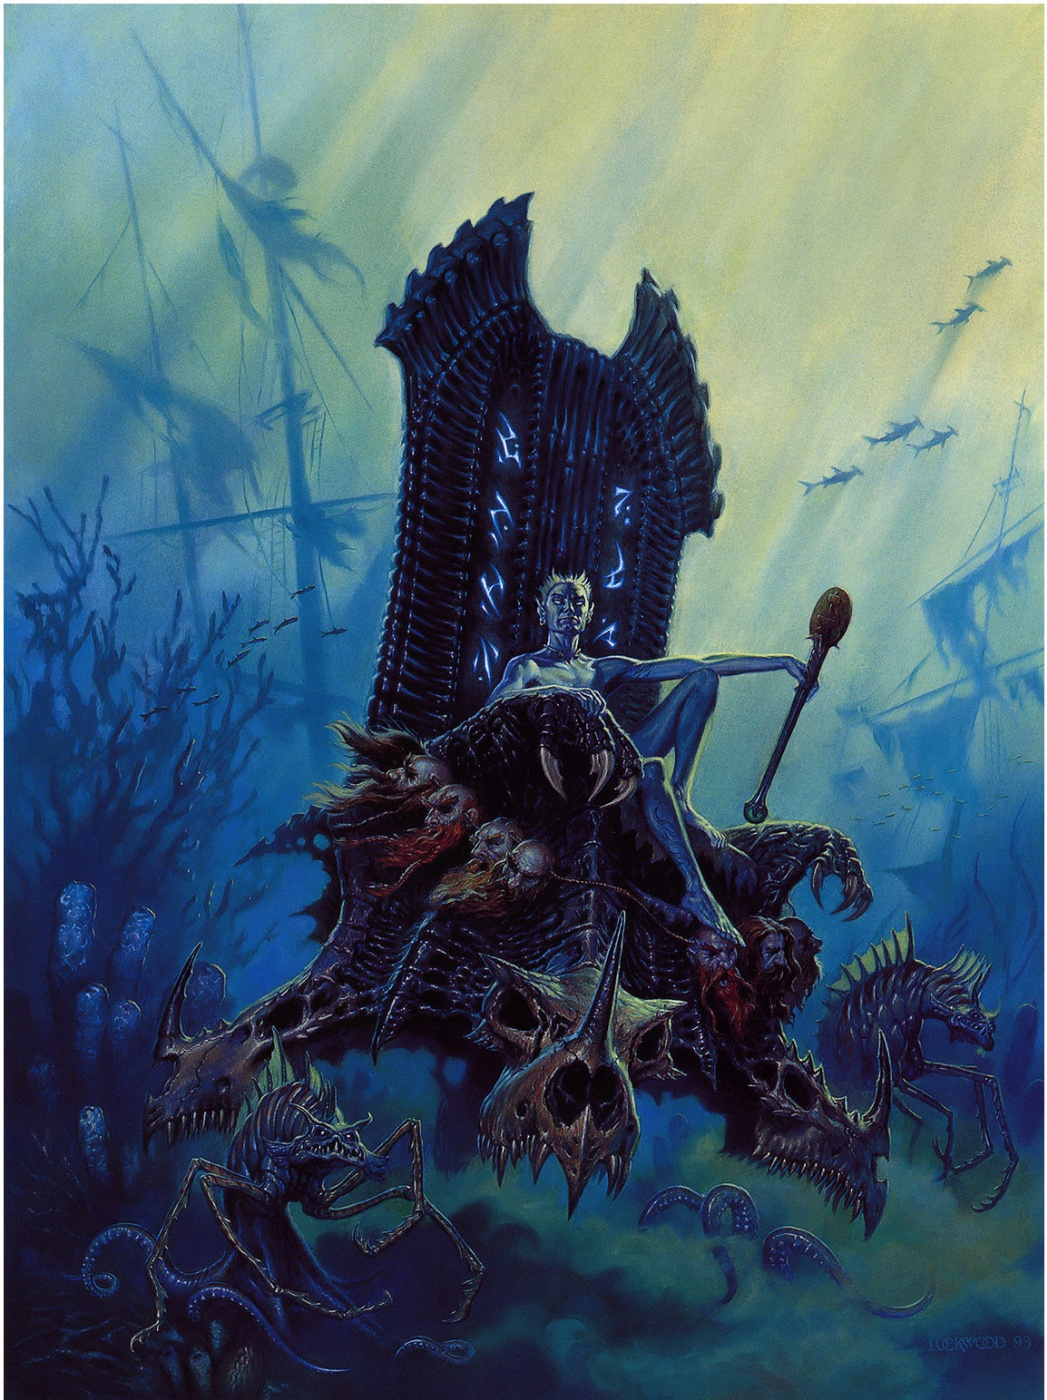 Todd Lockwood. The throne of dragon skulls